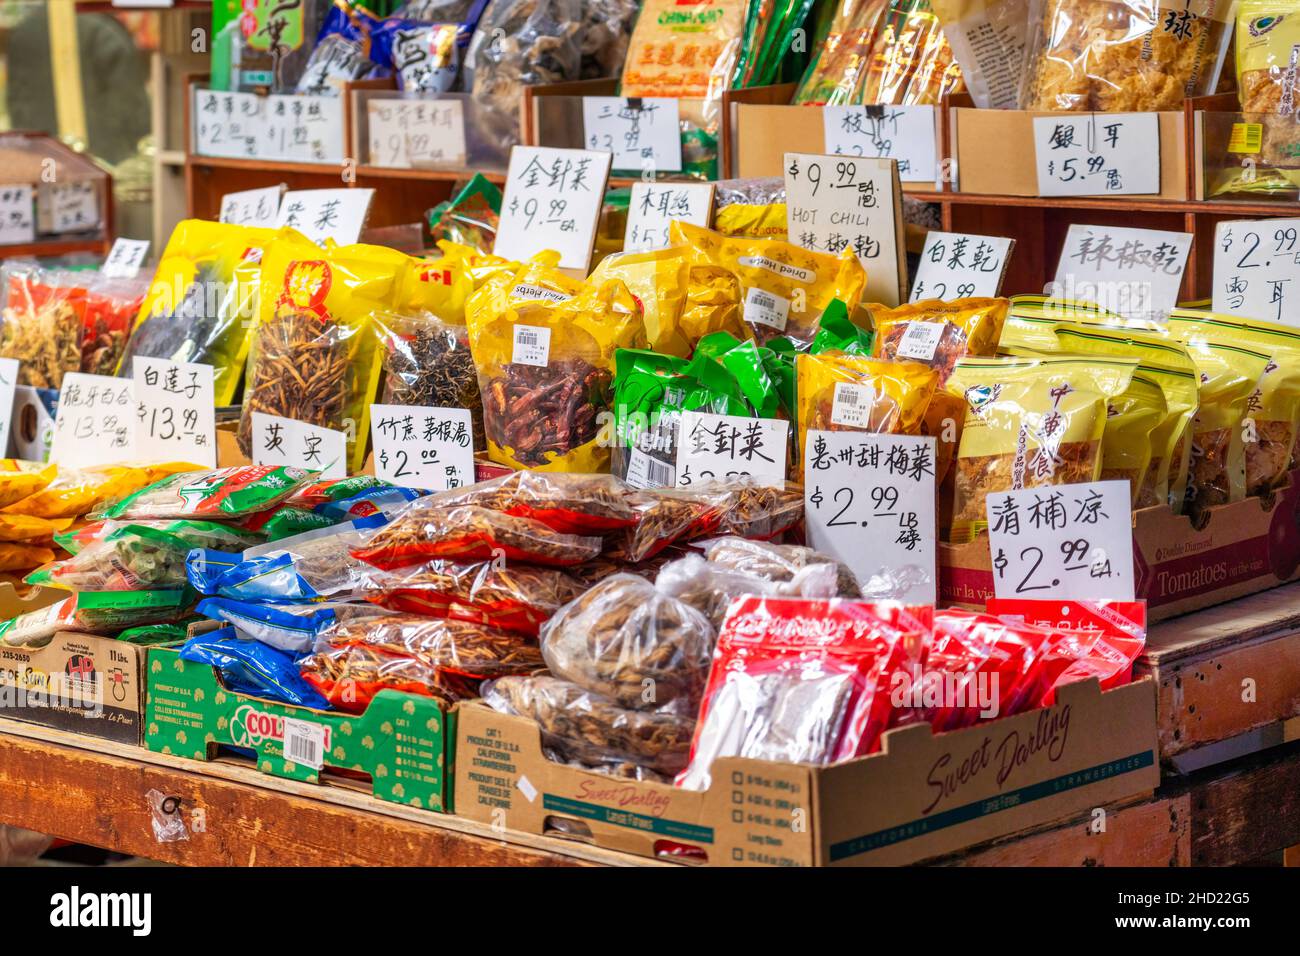 Les prix manuscrits des produits alimentaires dans une entreprise située dans le quartier de Chinatown. 2 janvier 2022 Banque D'Images